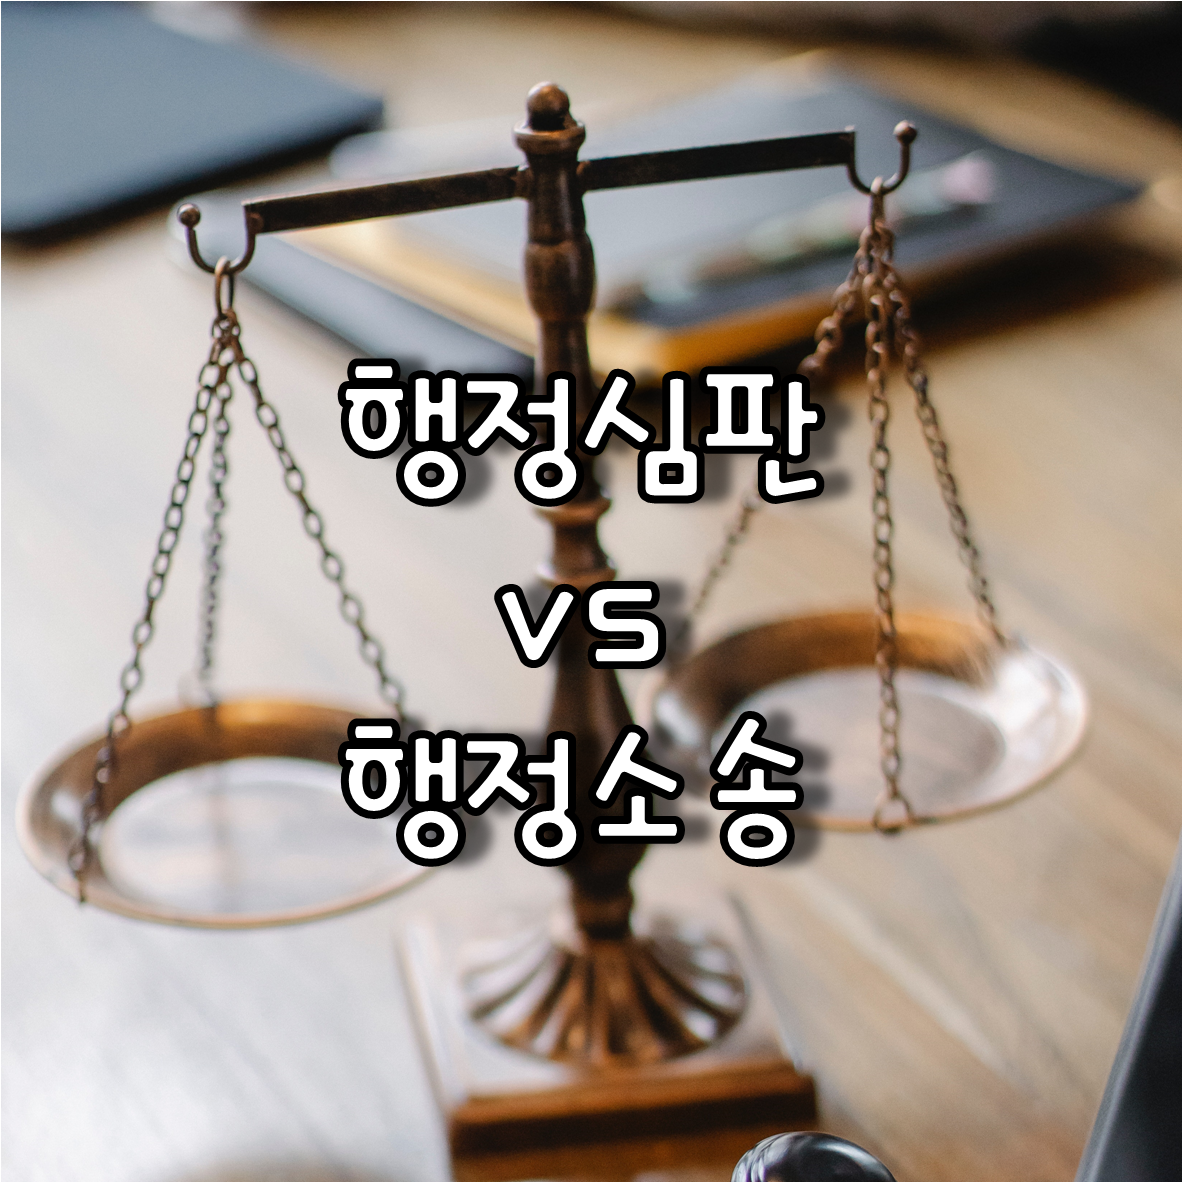 행정심판과 행정소송